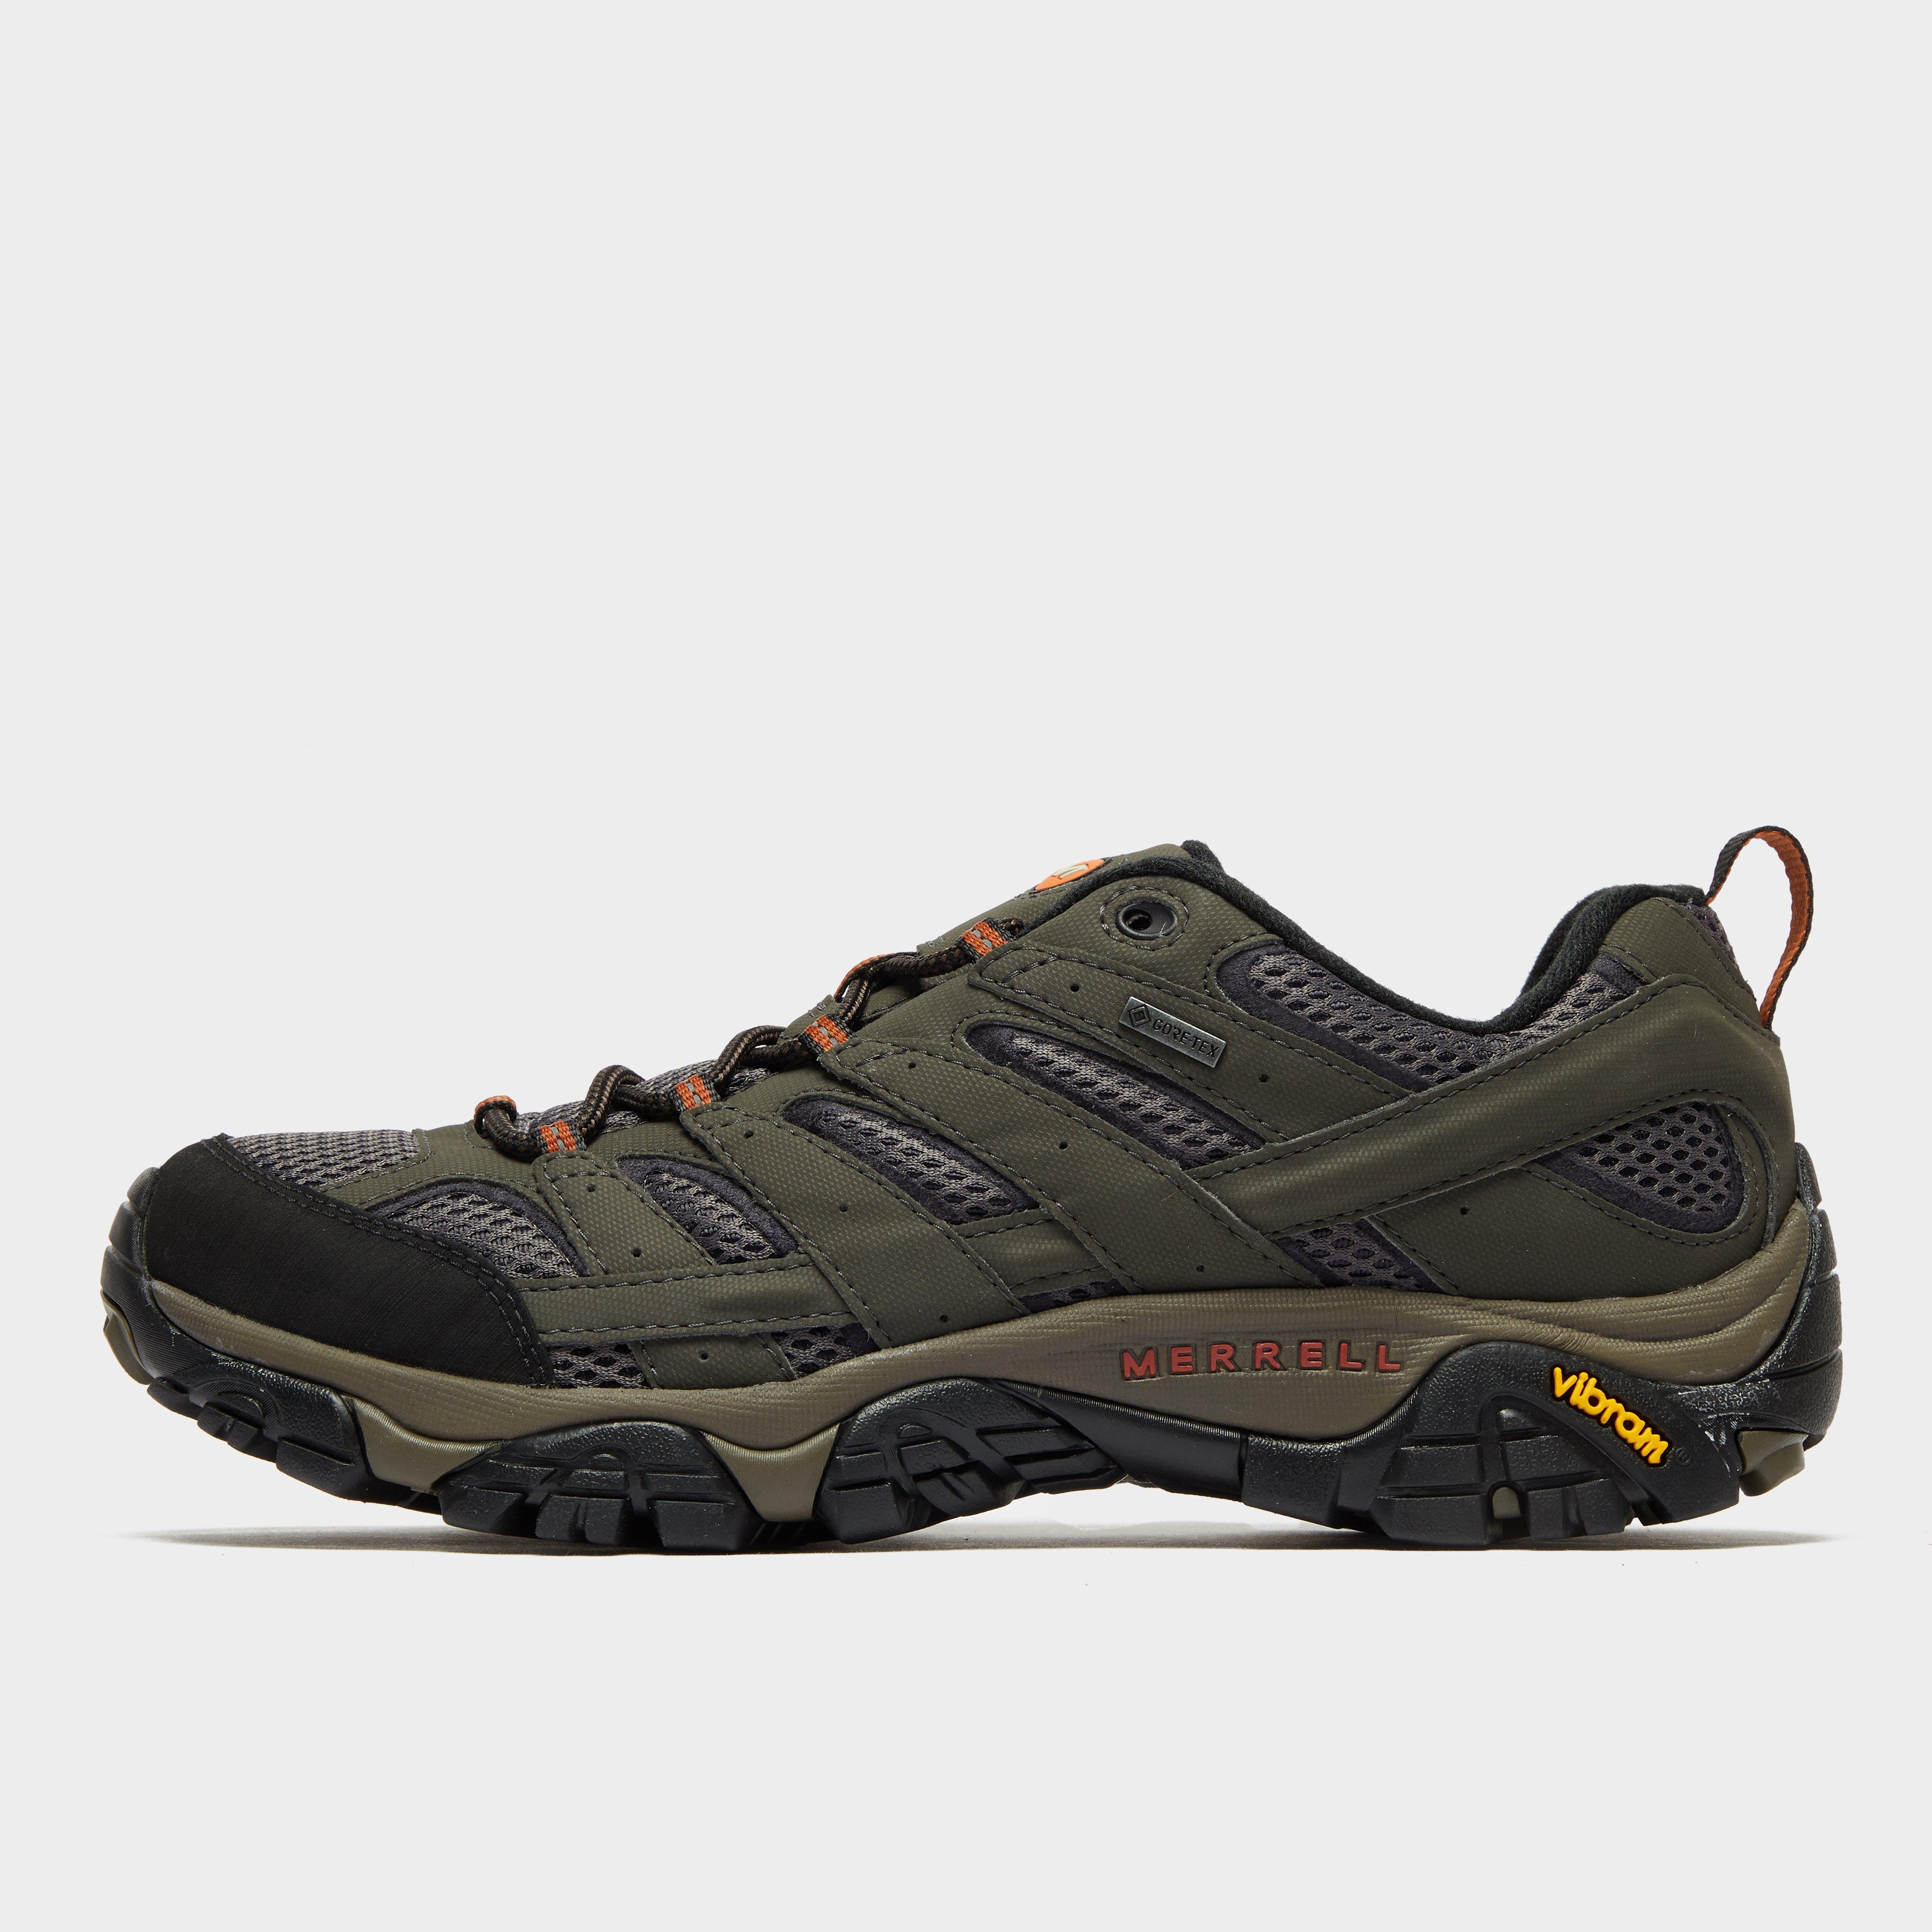 om fjols Sociologi Merrell Men's Moab 2 GORE-TEX® Hiking Shoes